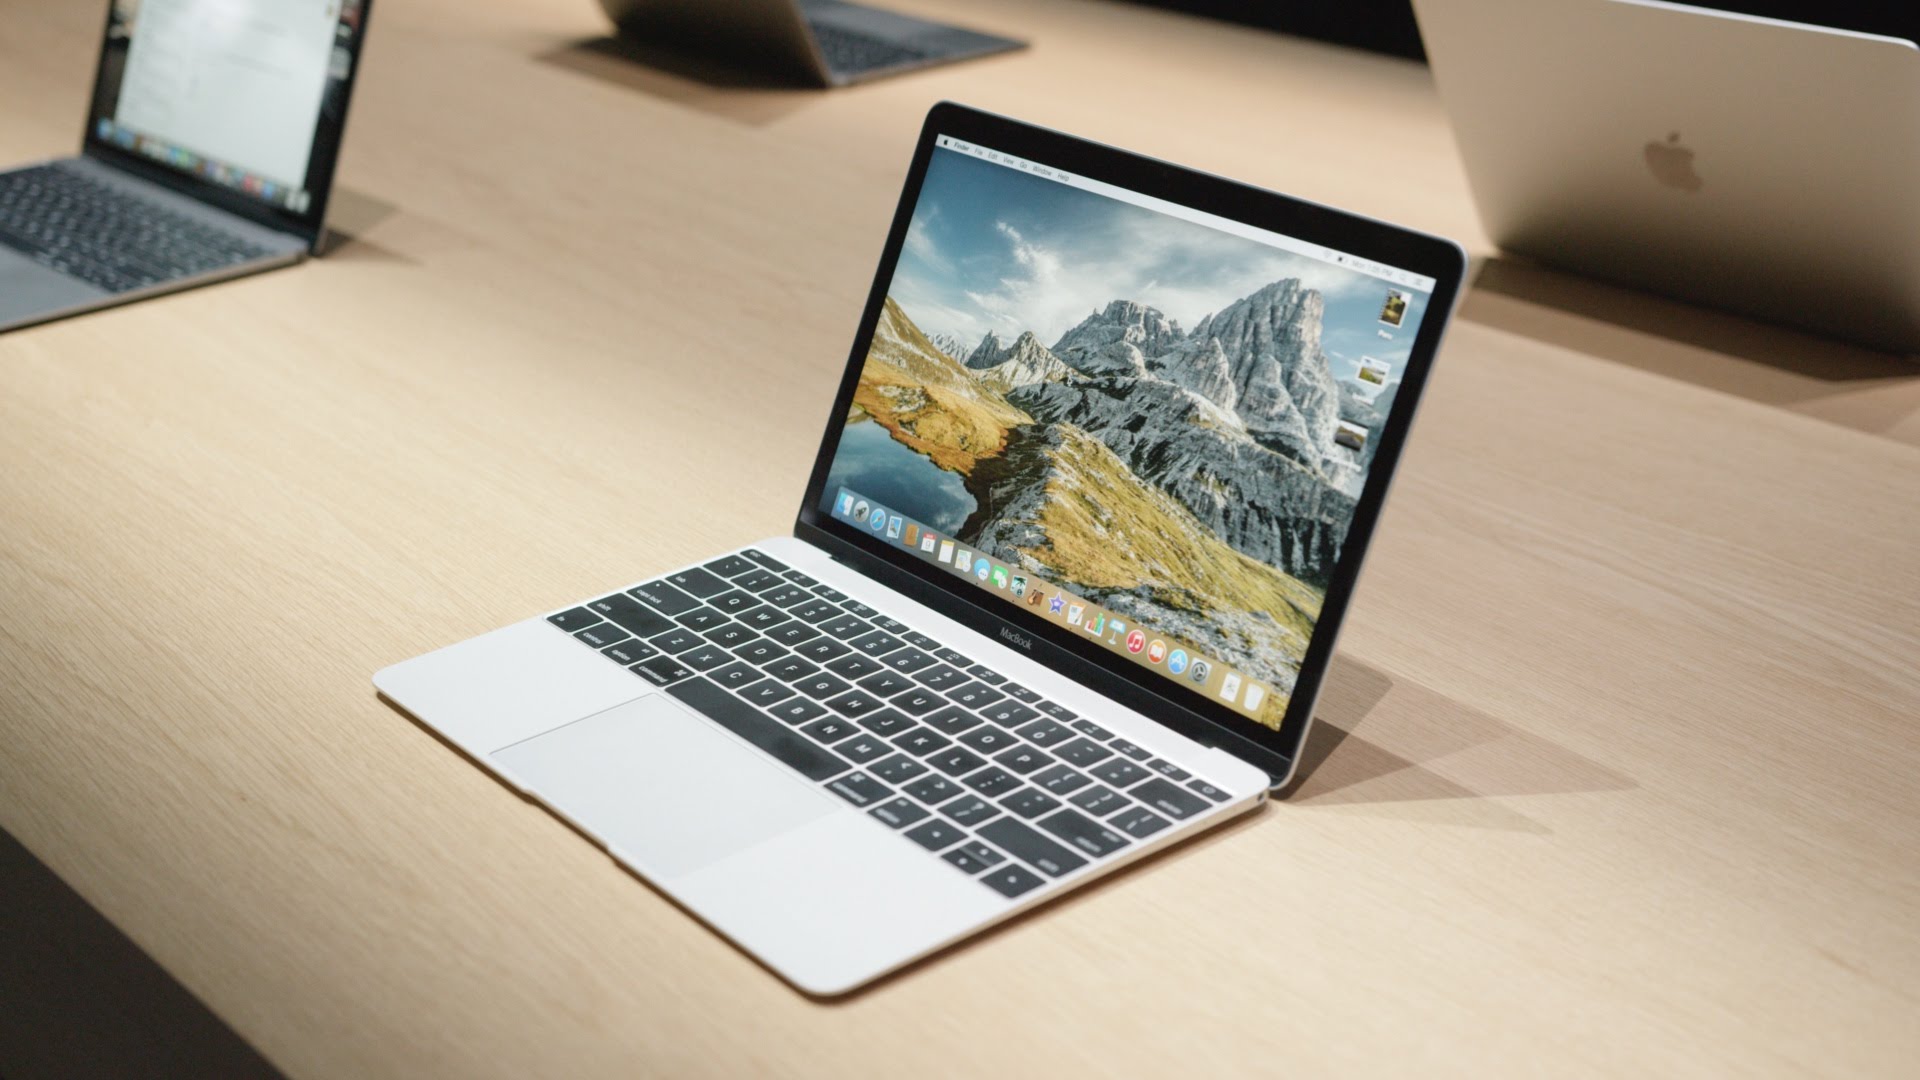 2016款MacBook传言汇总:取消MacBook Air,配